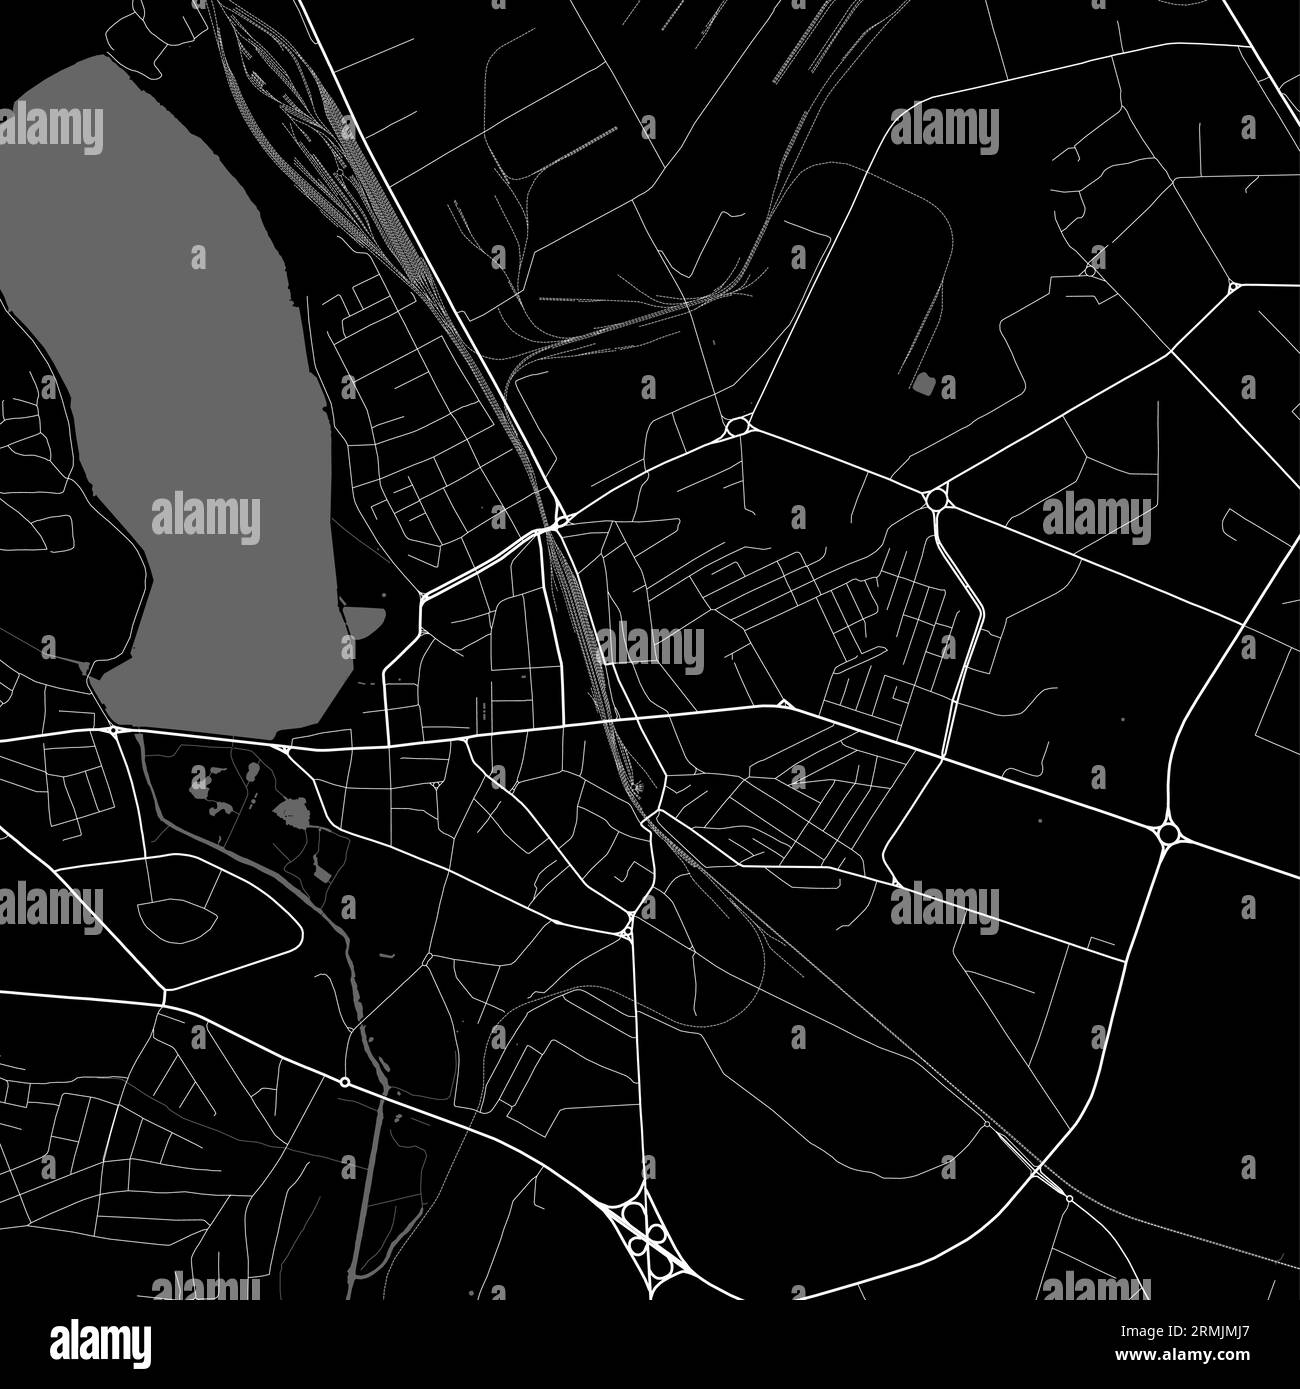 Stadtplan von Ternopil, Oblast Center of Ukraine. Städtische Verwaltungskarte in Schwarz-weiß mit Flüssen und Straßen, Parks und Eisenbahnen. Vektorillus Stock Vektor